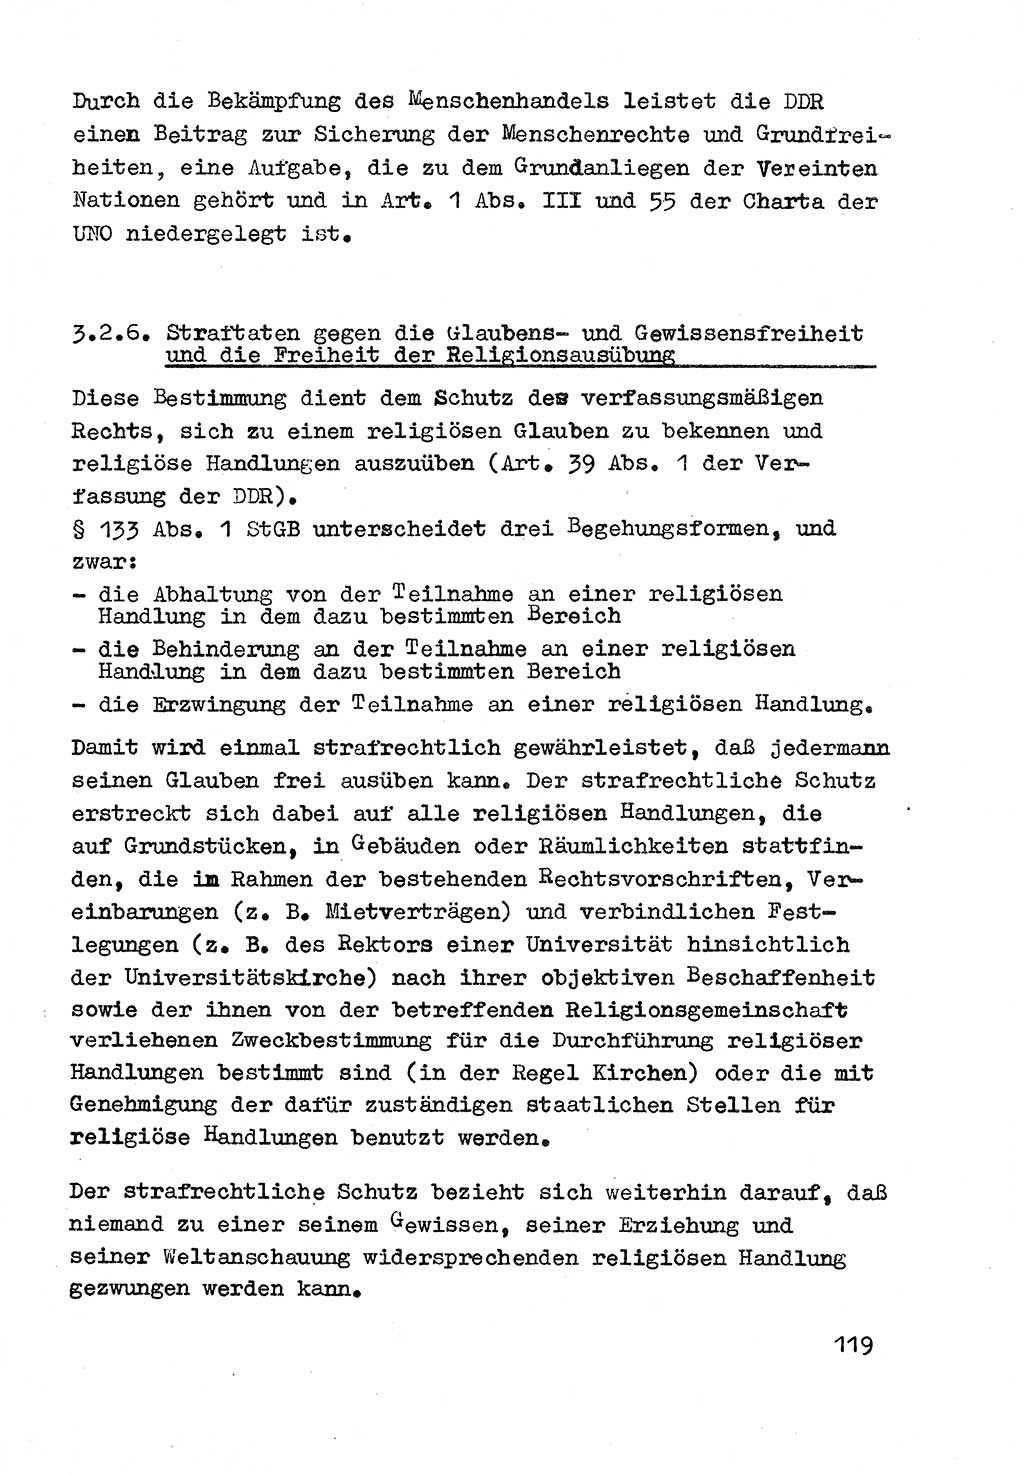 Strafrecht der DDR (Deutsche Demokratische Republik), Besonderer Teil, Lehrmaterial, Heft 3 1969, Seite 119 (Strafr. DDR BT Lehrmat. H. 3 1969, S. 119)